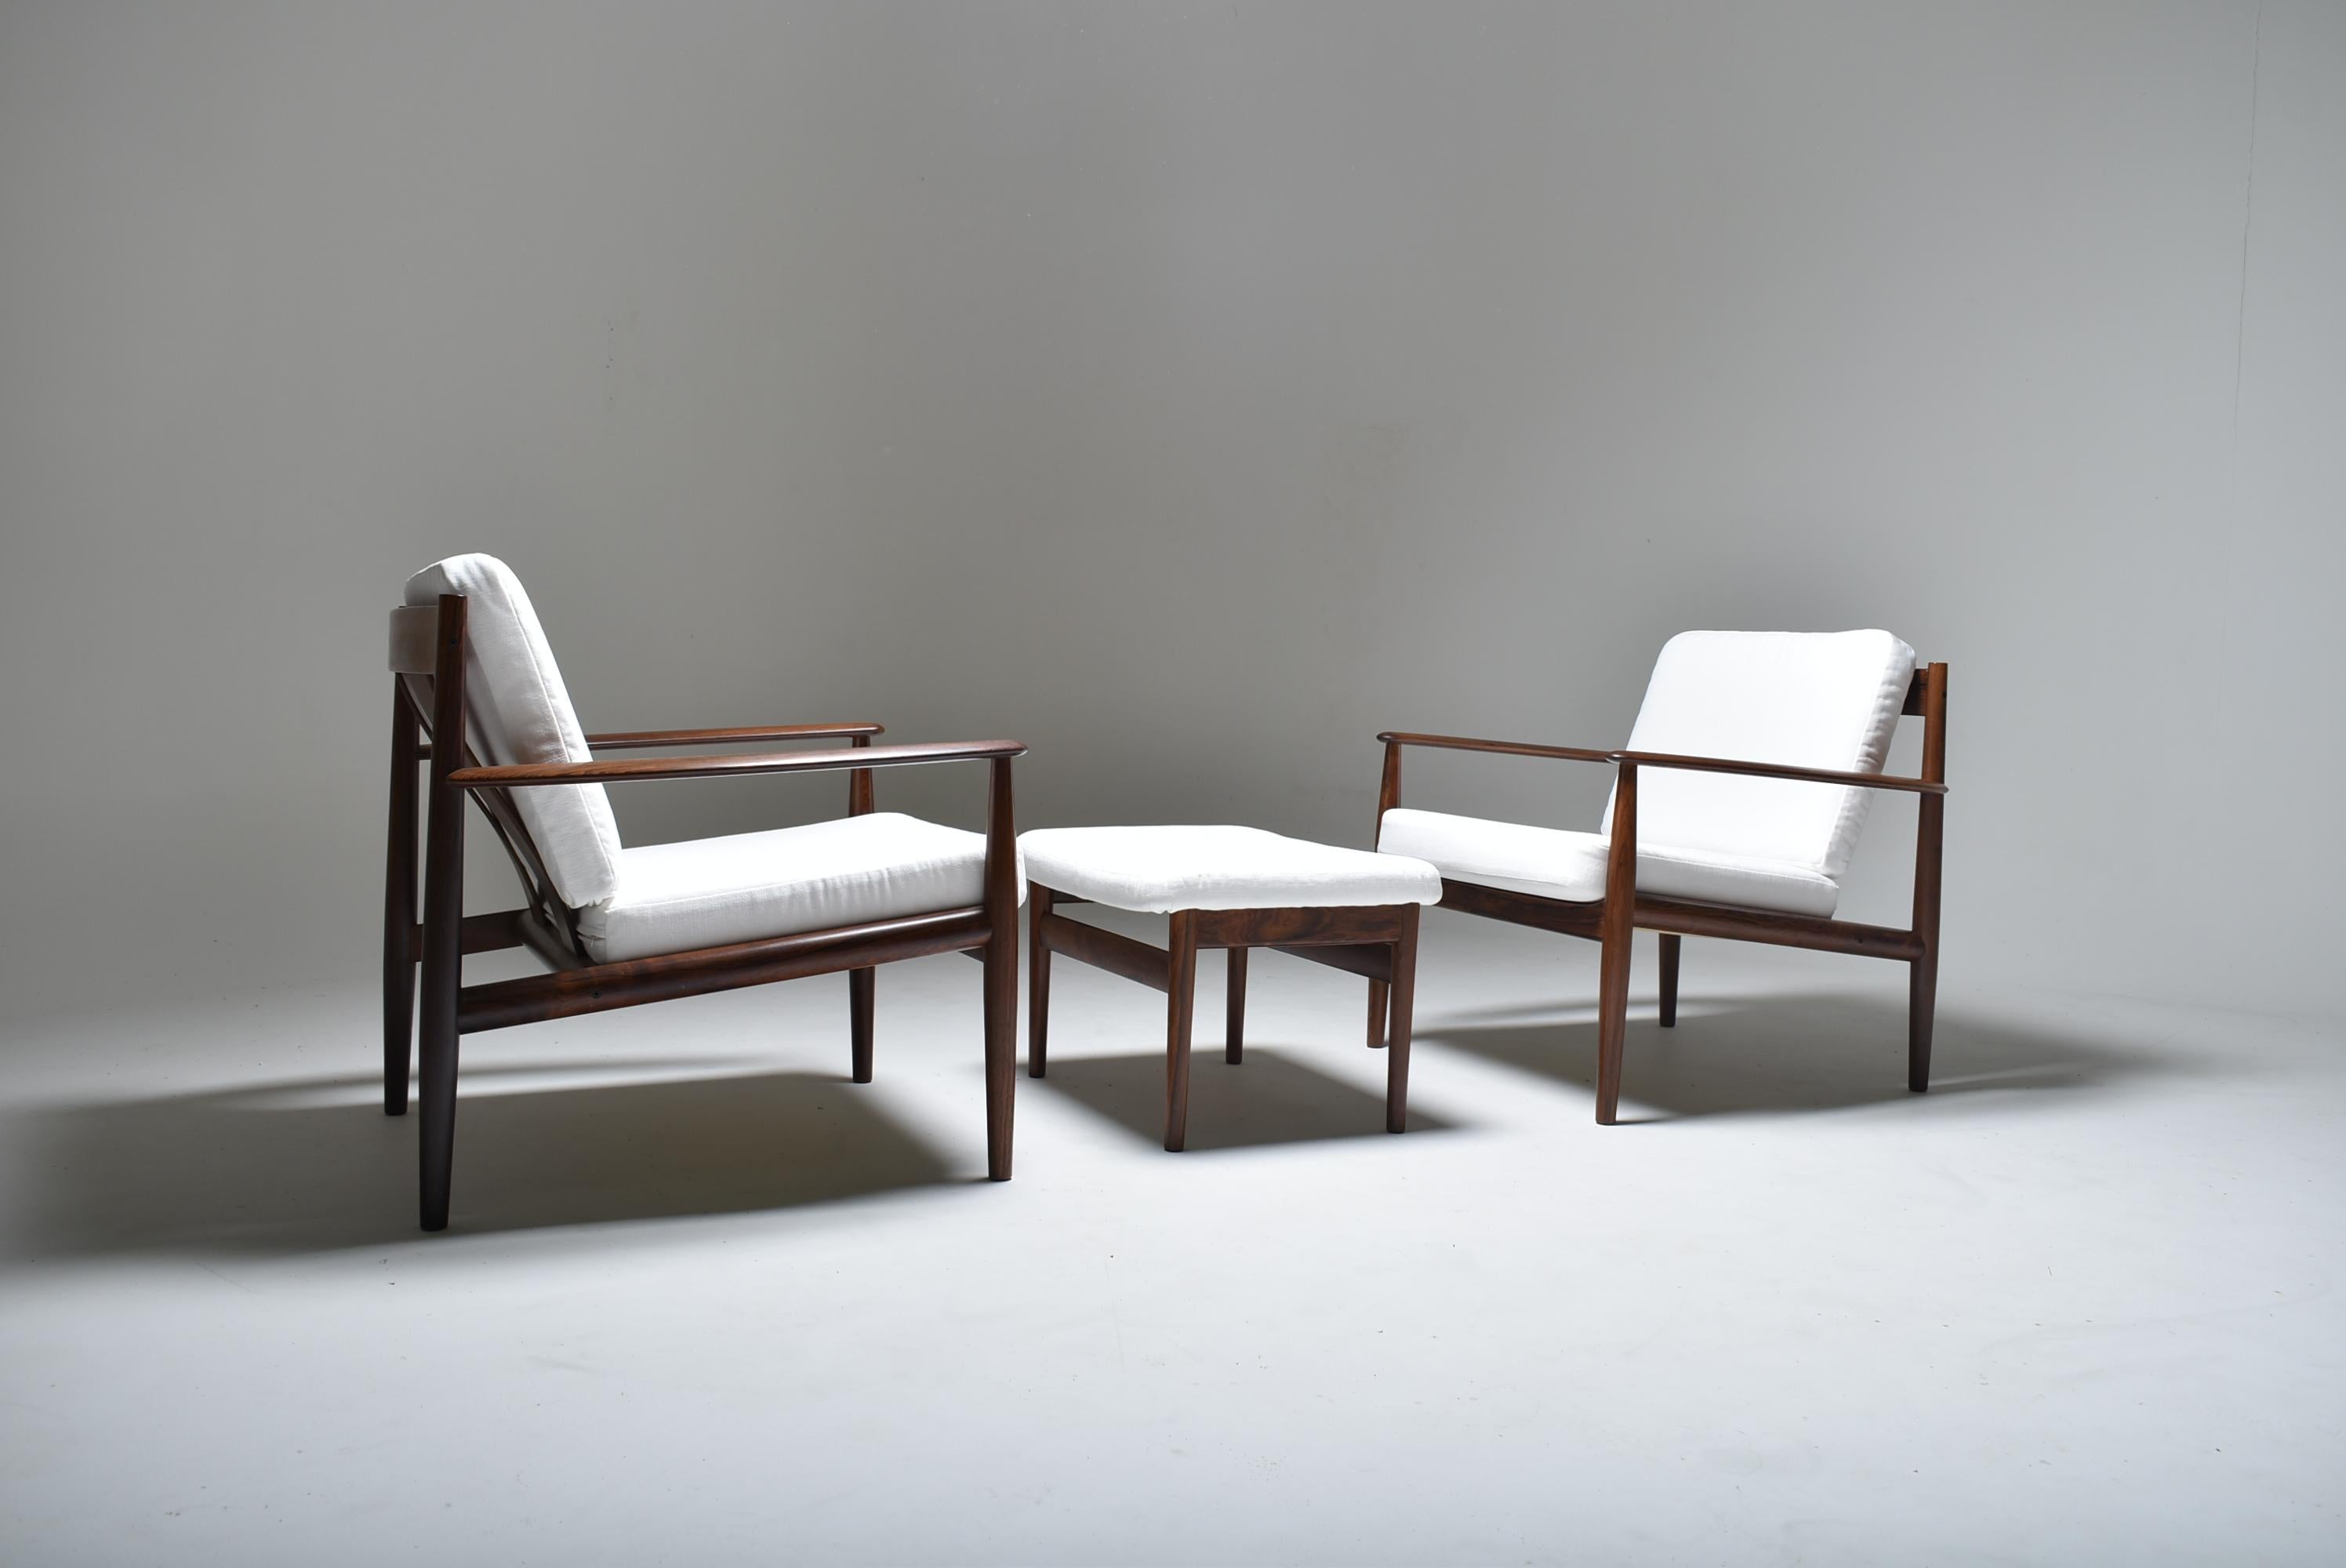 Ensemble de deux chaises longues modèle 128 et d'un ottoman, conçu par Grete Jalk, Danemark.
Un vrai classique grâce à l'association d'un design léger et élégant et d'un confort parfaitement équilibré. Il s'agit peut-être du meilleur design de Grete